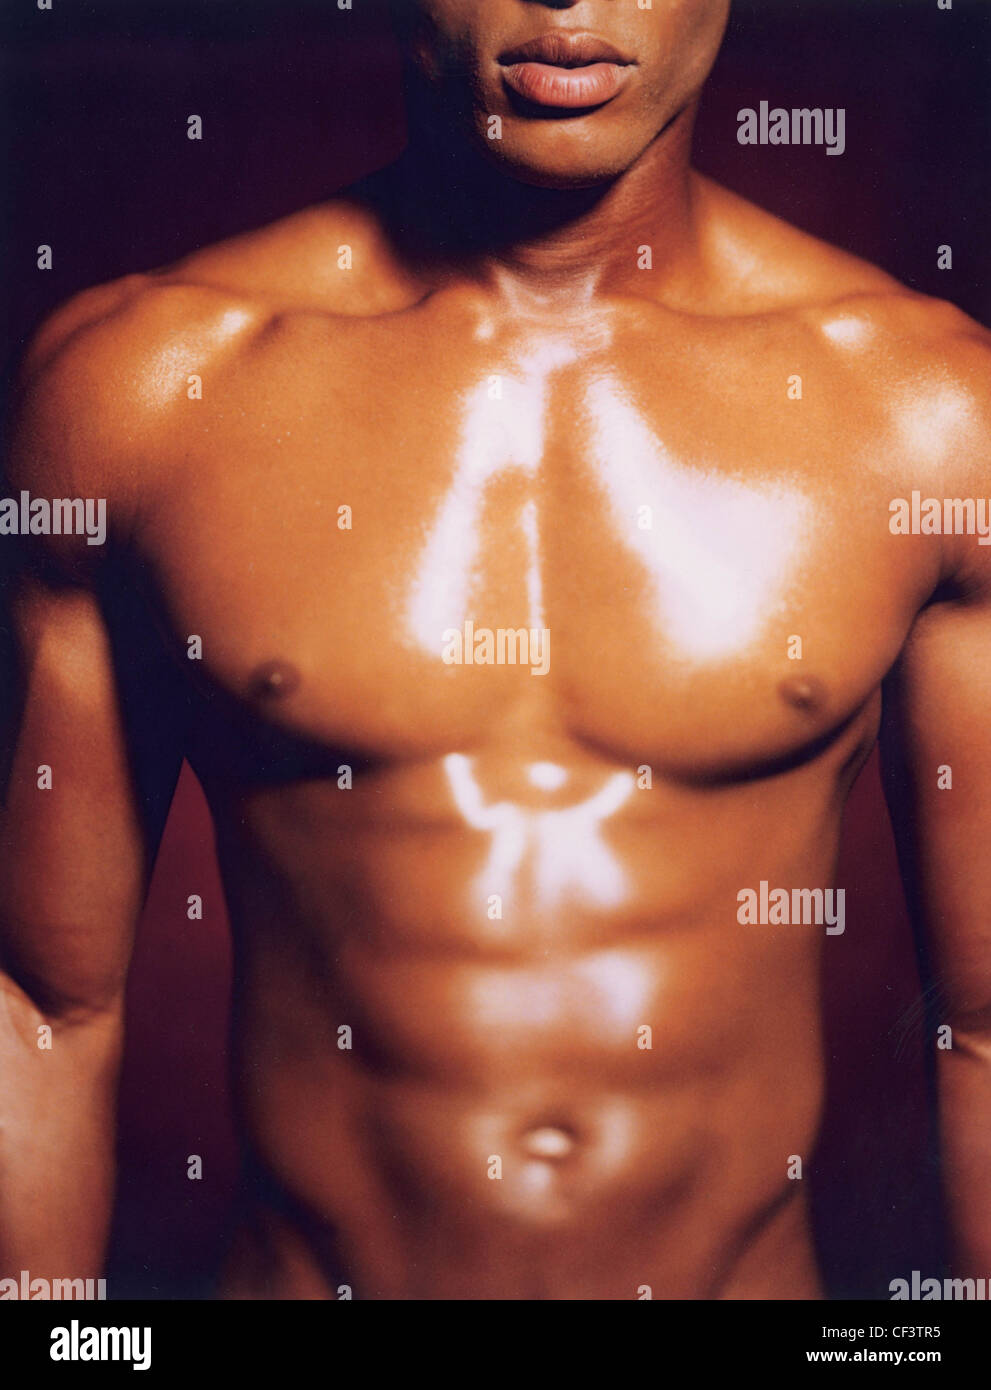 Tagliate il corpo superiore del maschio con ben definito di muscoli e olio sul petto Foto Stock